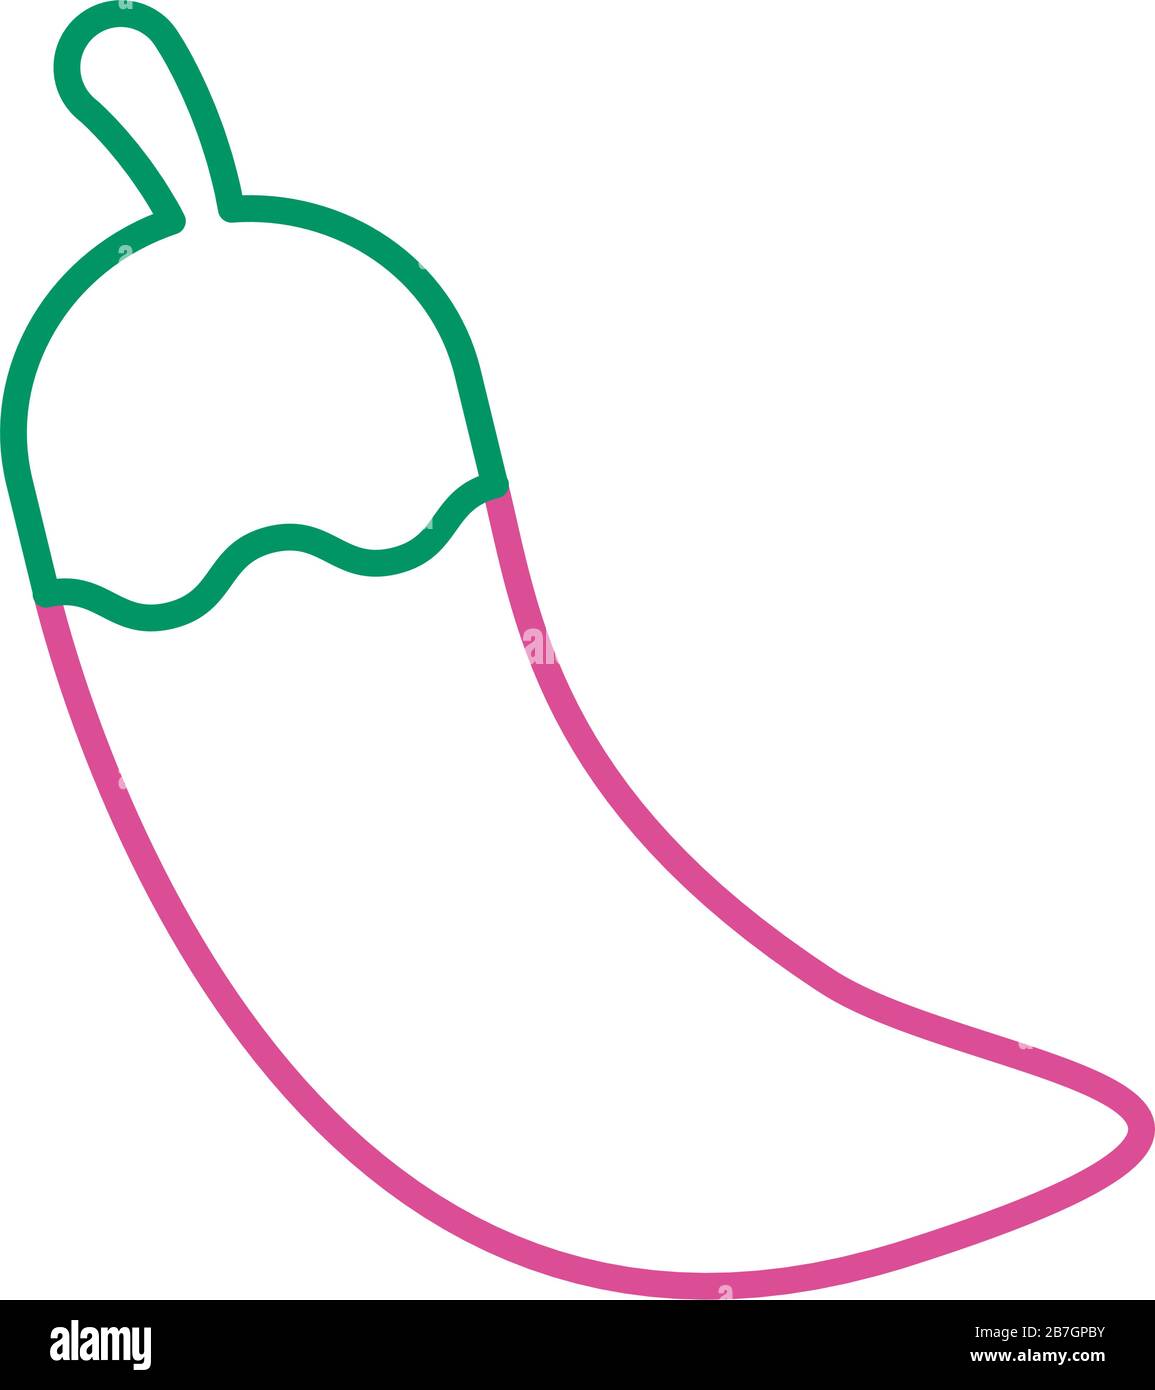 Chili Pfeffer - Symbol für heiße Gemüse-Linie Stock Vektor